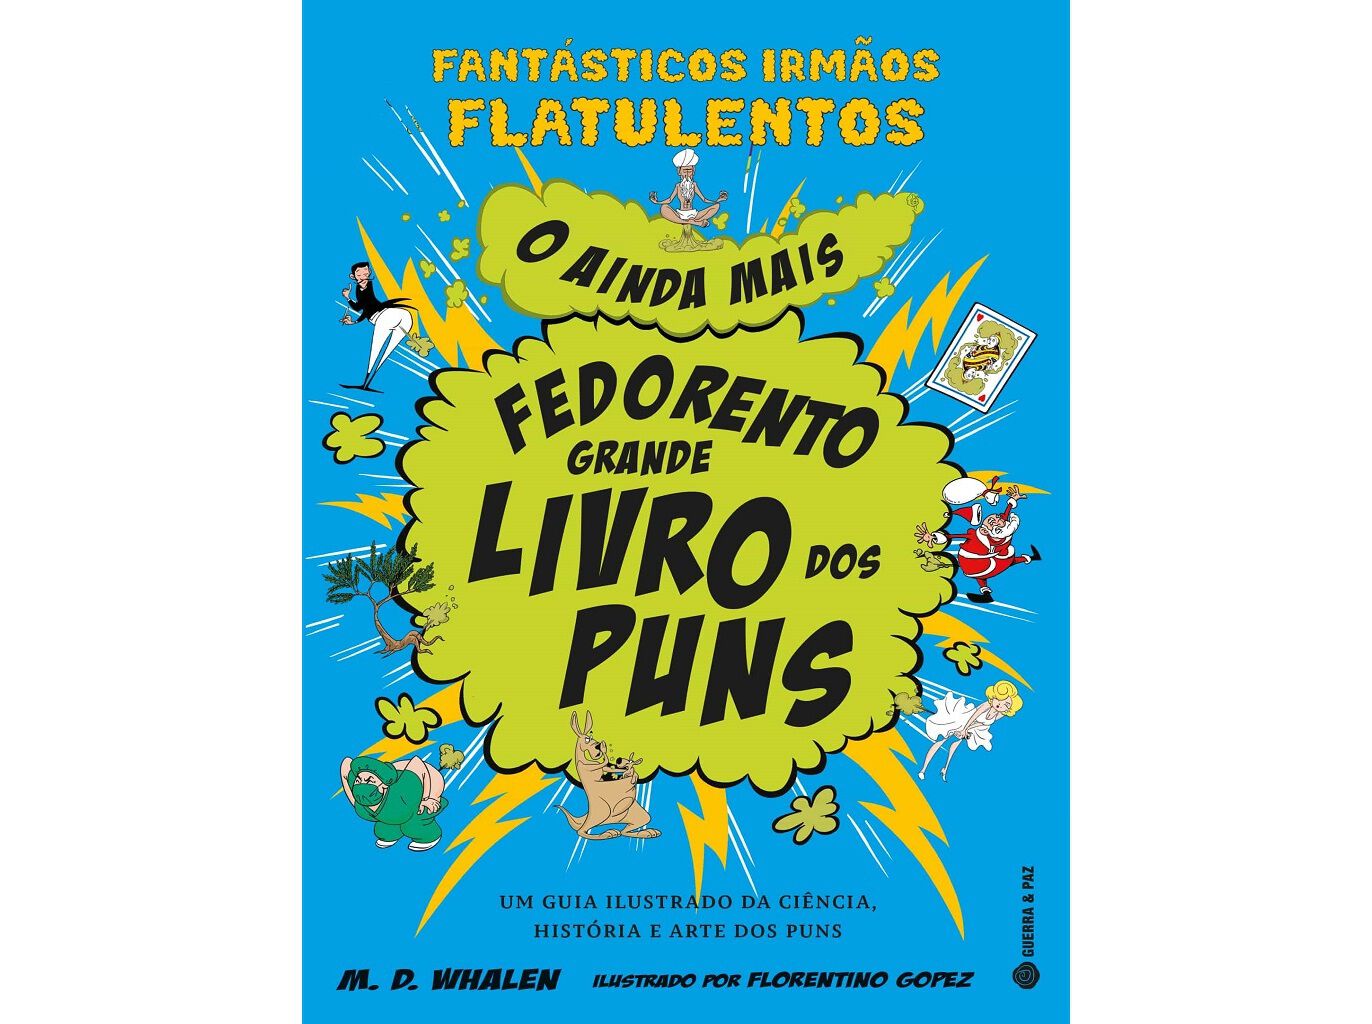 Livro de 20 anos do WimBelemDon - Português/Espanhol by